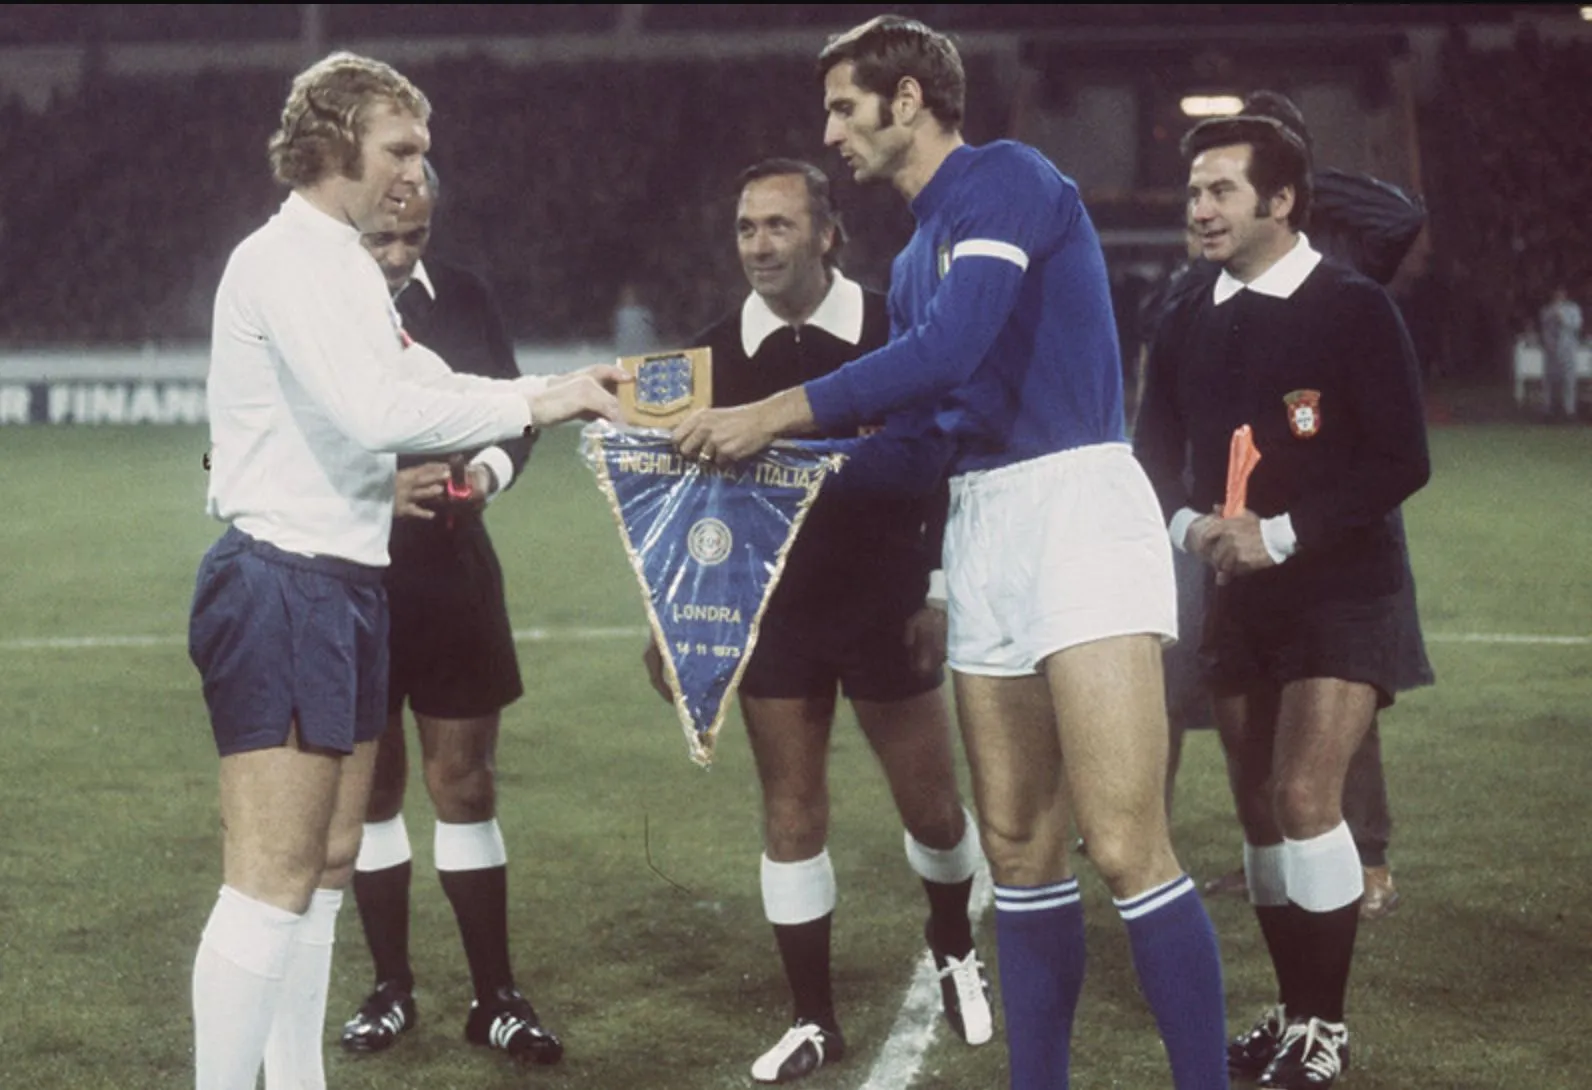 1973 : Le jour où l’Italie a triomphé pour la première fois à Wembley